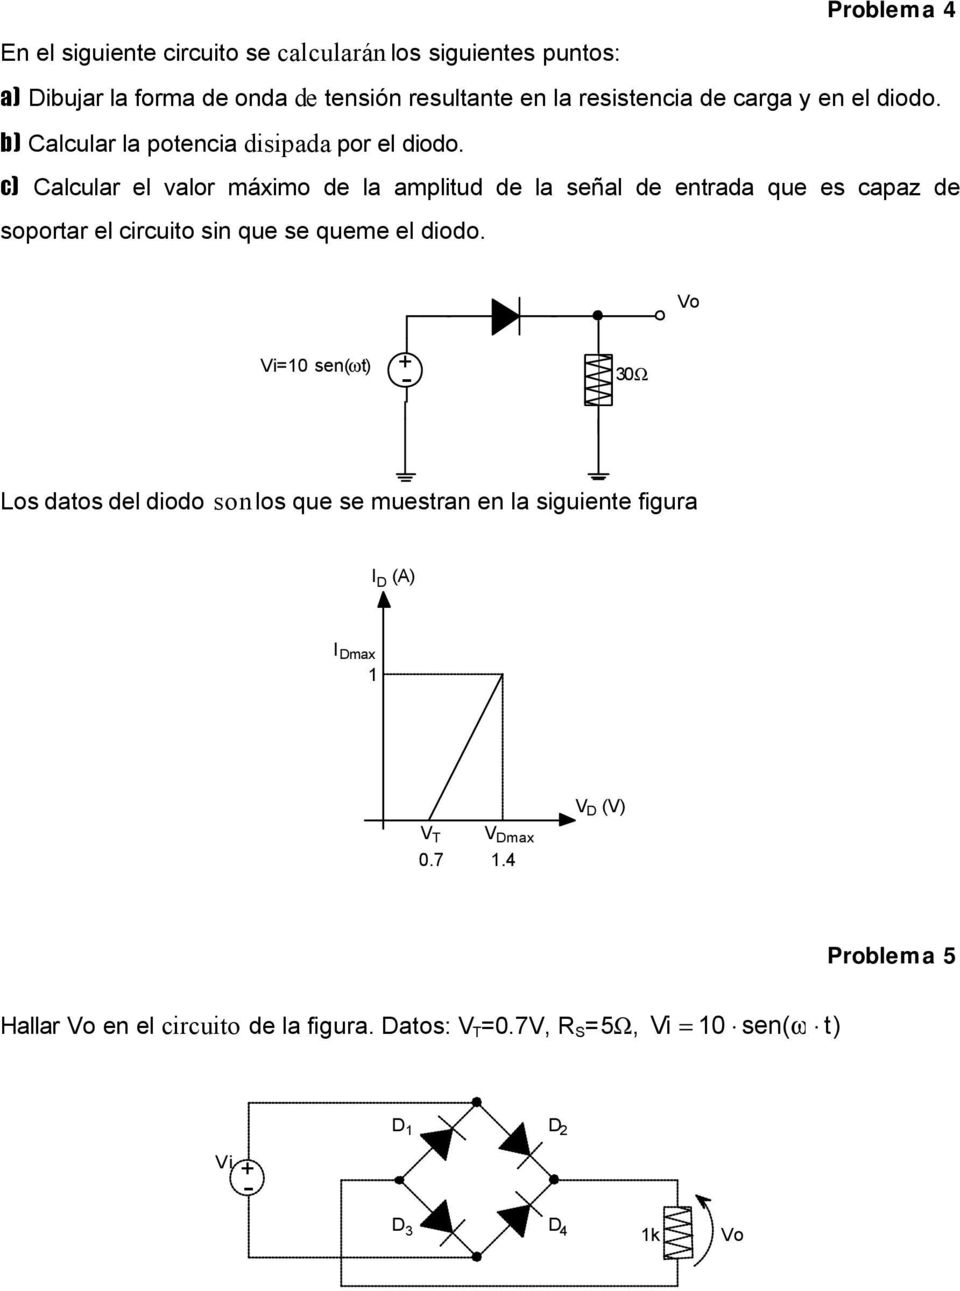 c) Calcular el valor máximo de la amplitud de la señal de entrada que es capaz de soportar el circuito sin que se queme el diodo.